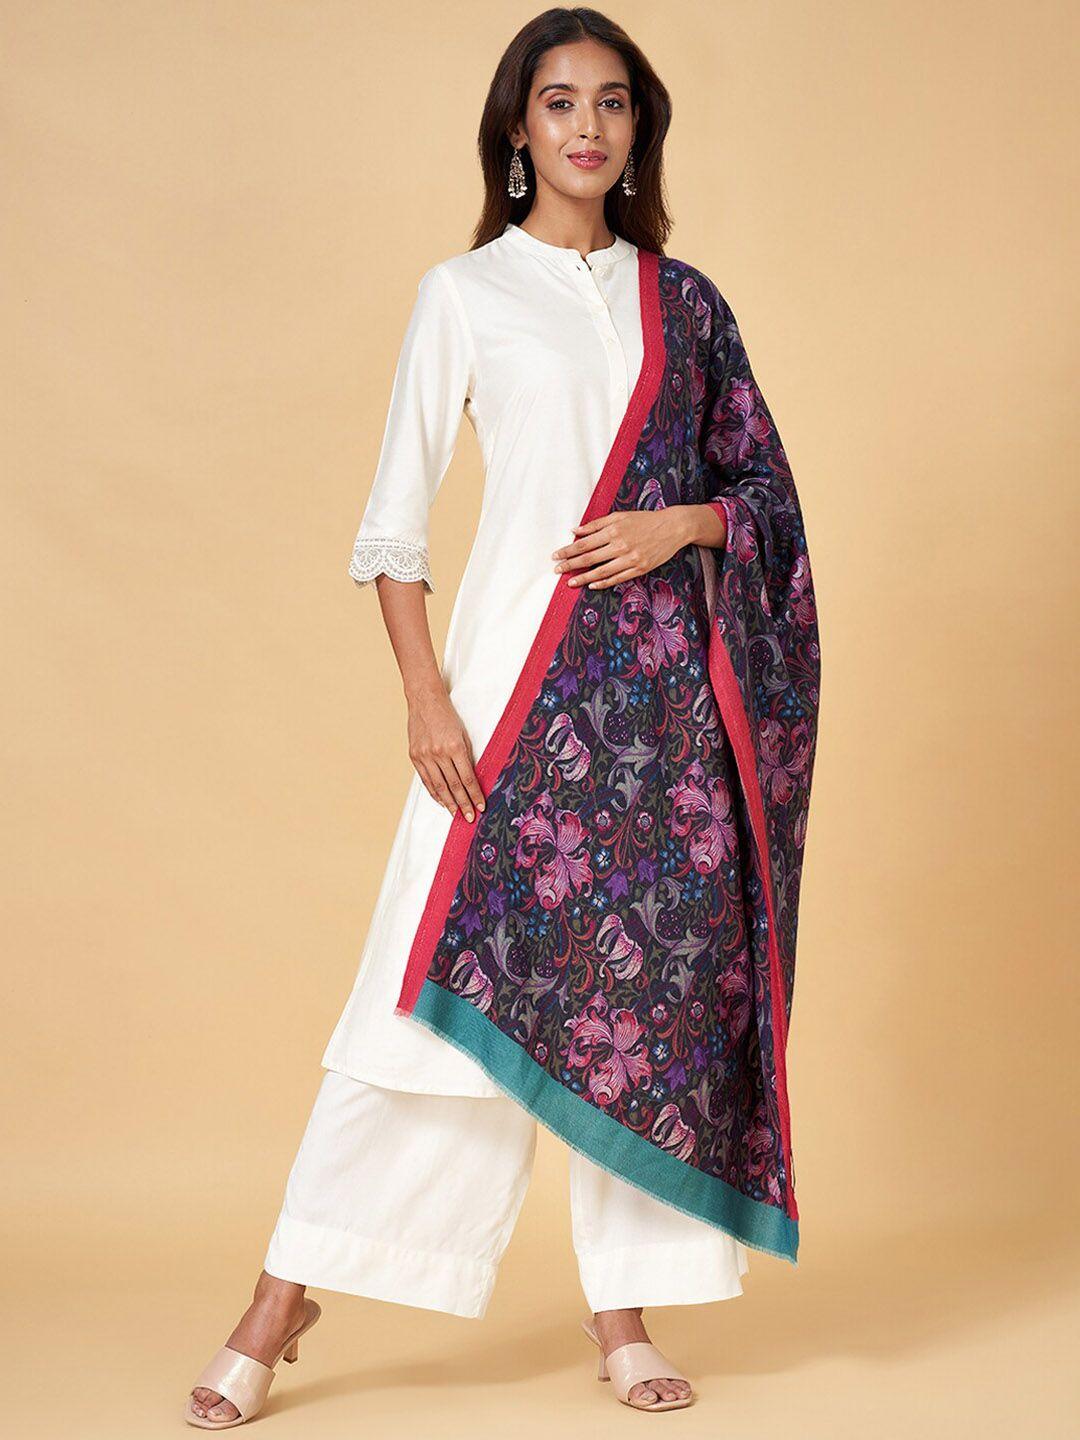 rangmanch by pantaloons floral printed acrylic shawl